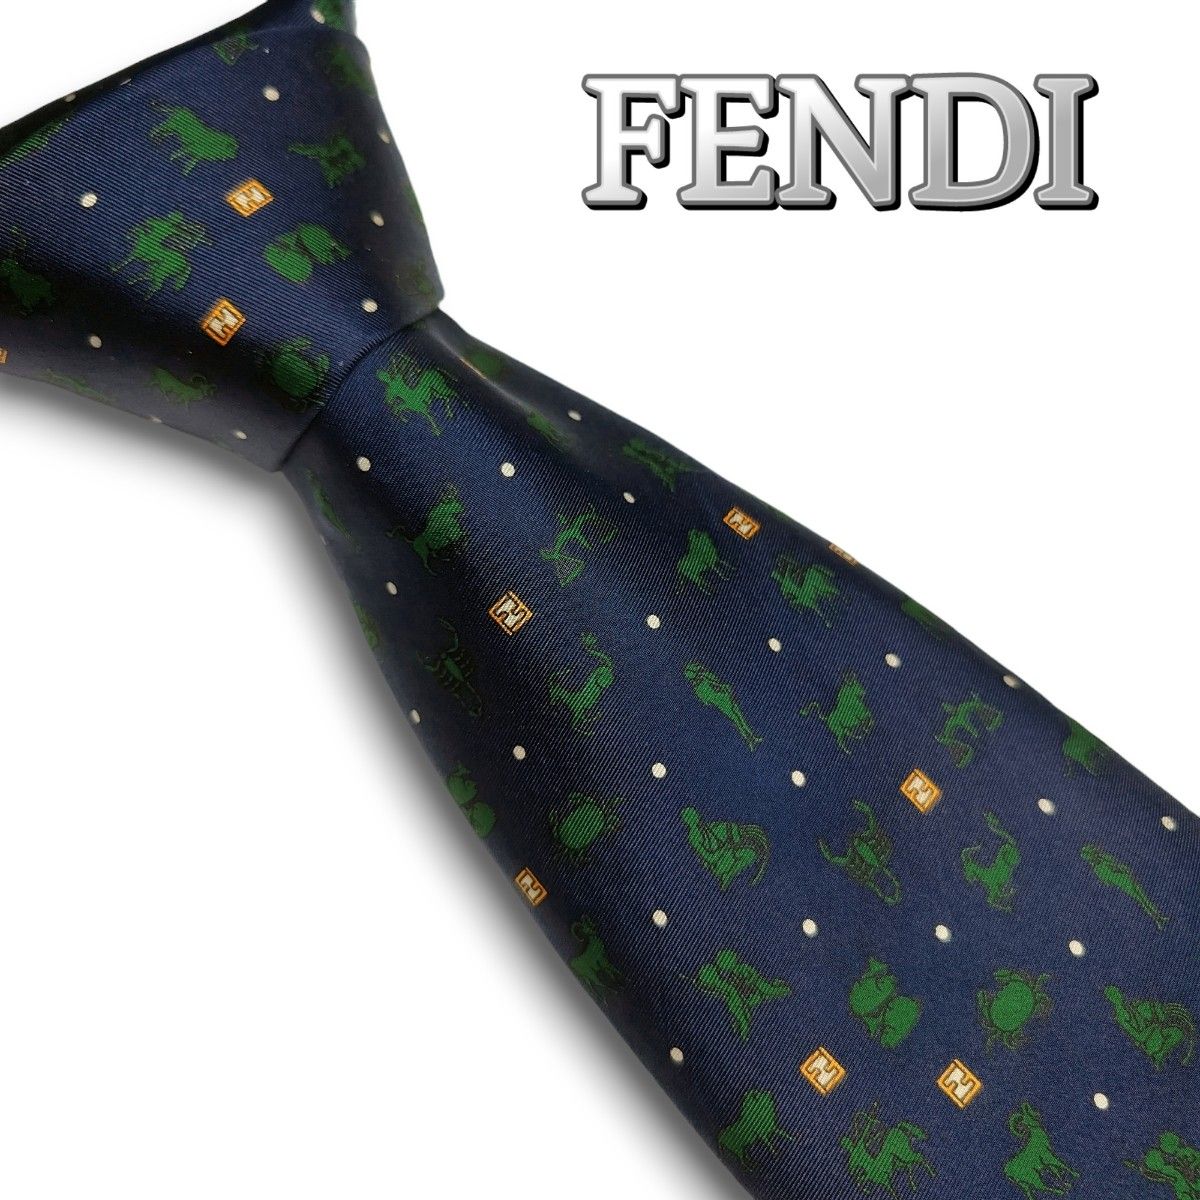 FENDI　フェンディ　星座柄　ズッキーノ　高級シルクネクタイ　イタリア製